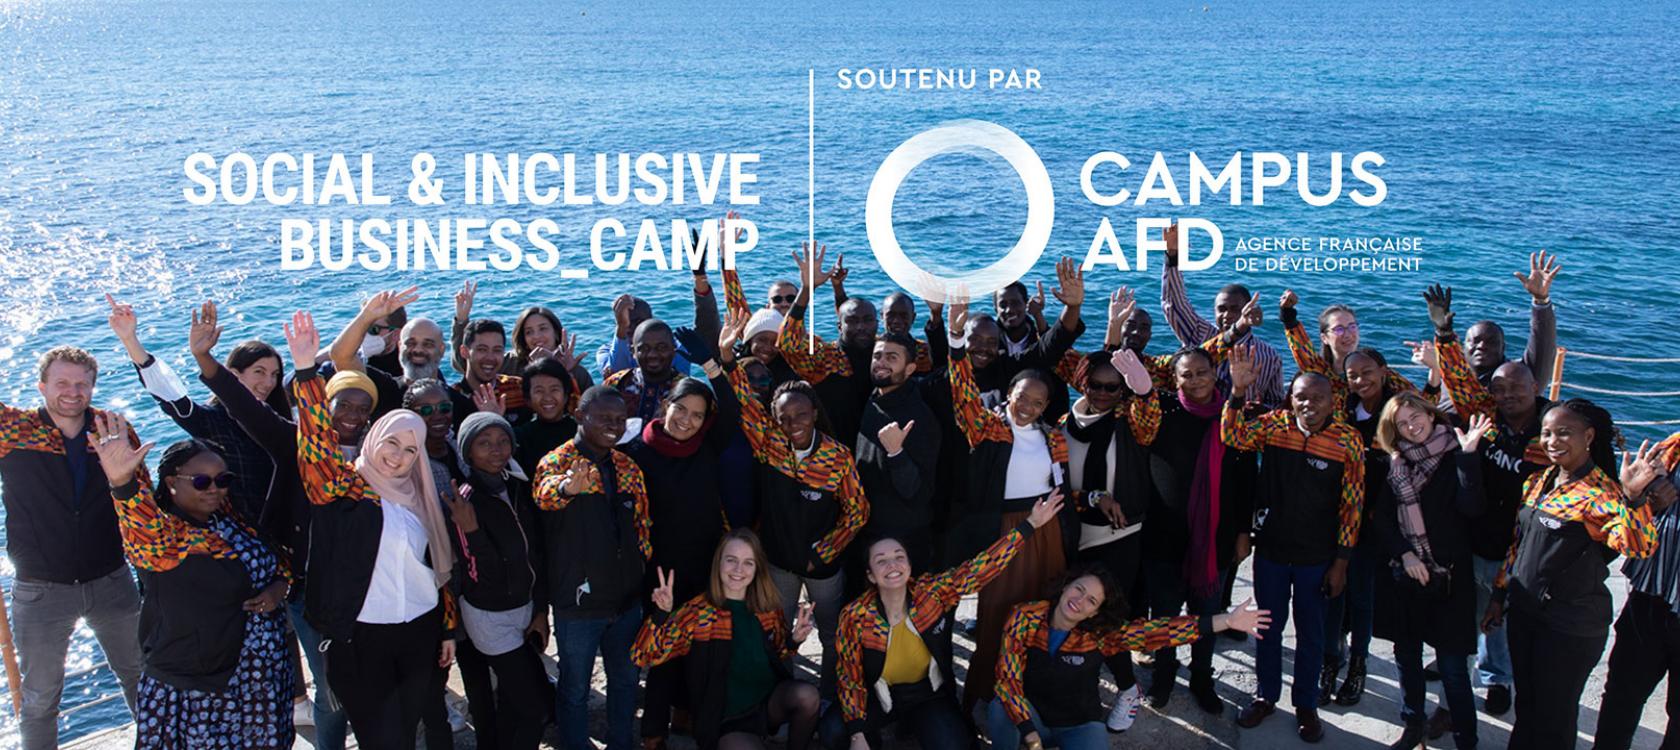 Social & Inclusive Business Camp du Campus AFD : en Afrique, l’entrepreneuriat vertueux passe un cap